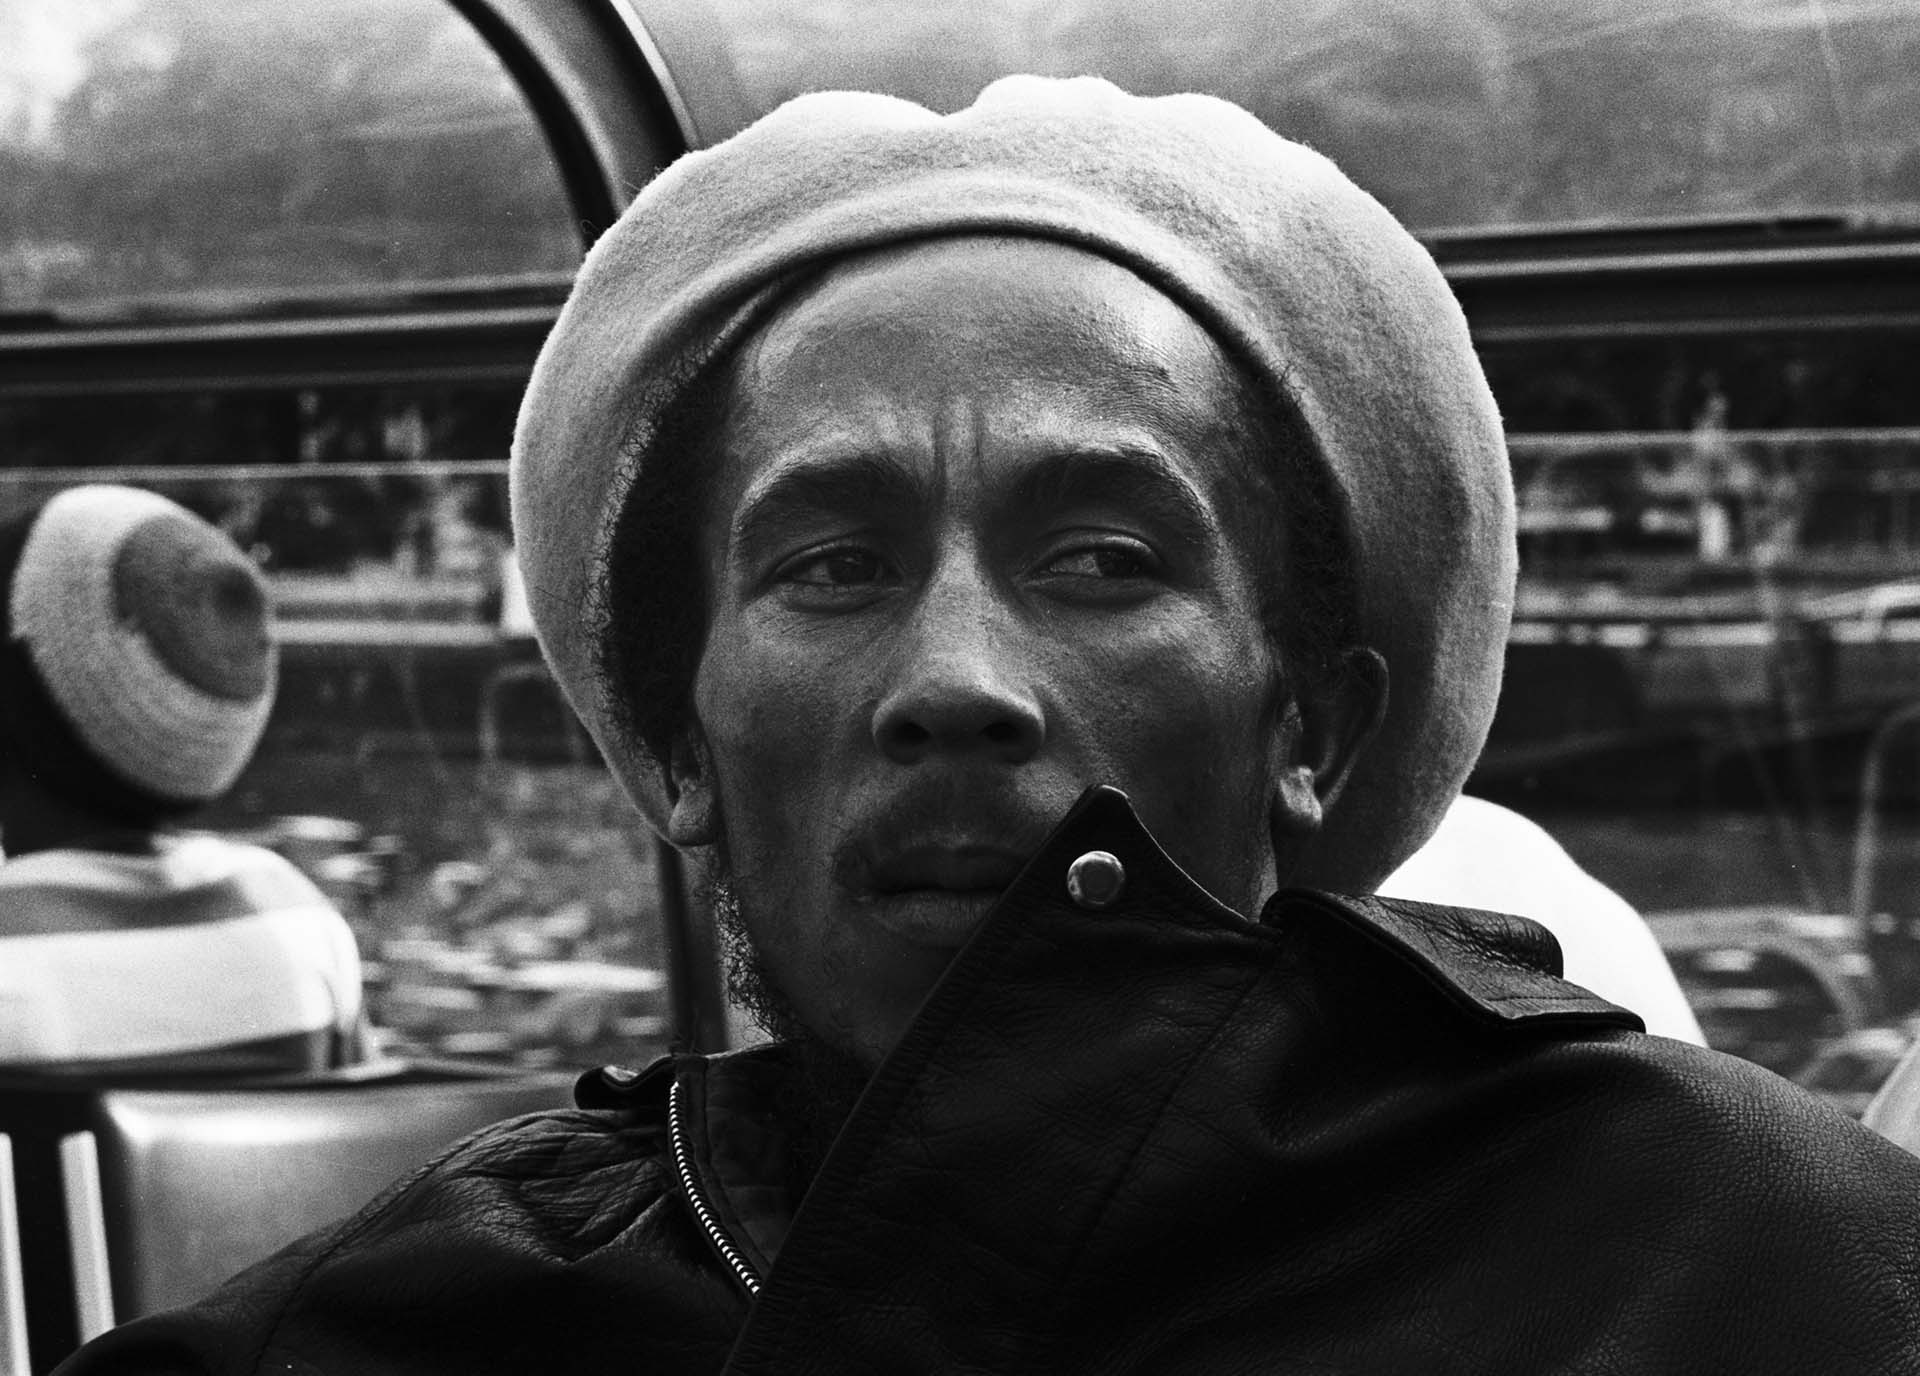 AMSTERDAM, HOLANDA - El músico Bob Marley (1945-1981) posa en una foto tomada en 1976. (Gijsbert Hanekroot/Redferns)